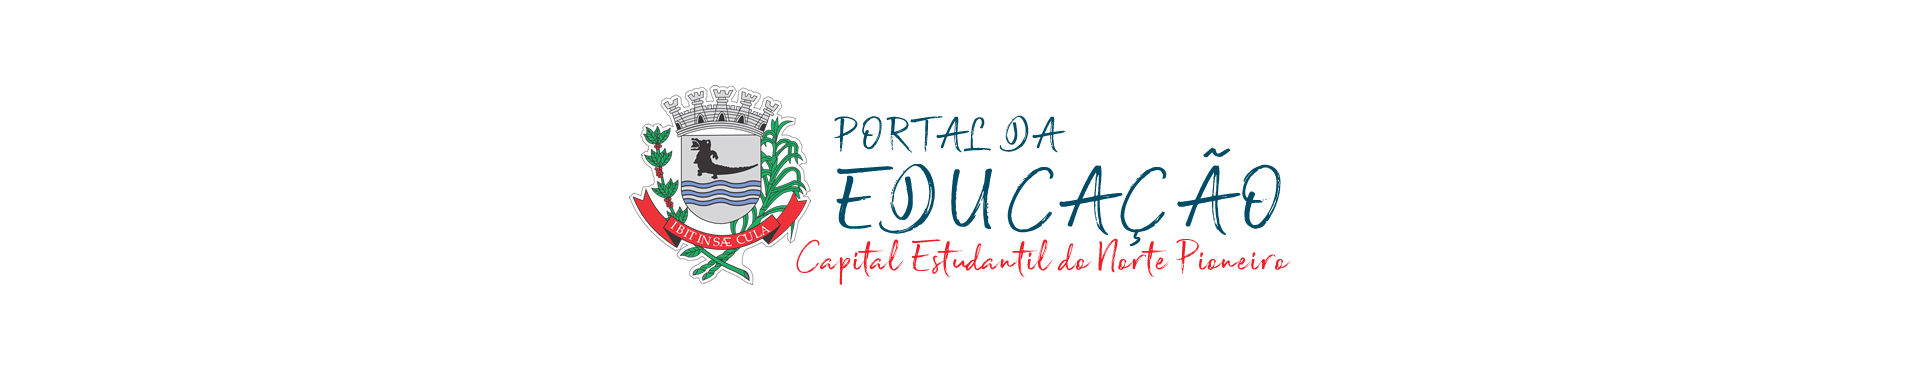 Portal da Educação